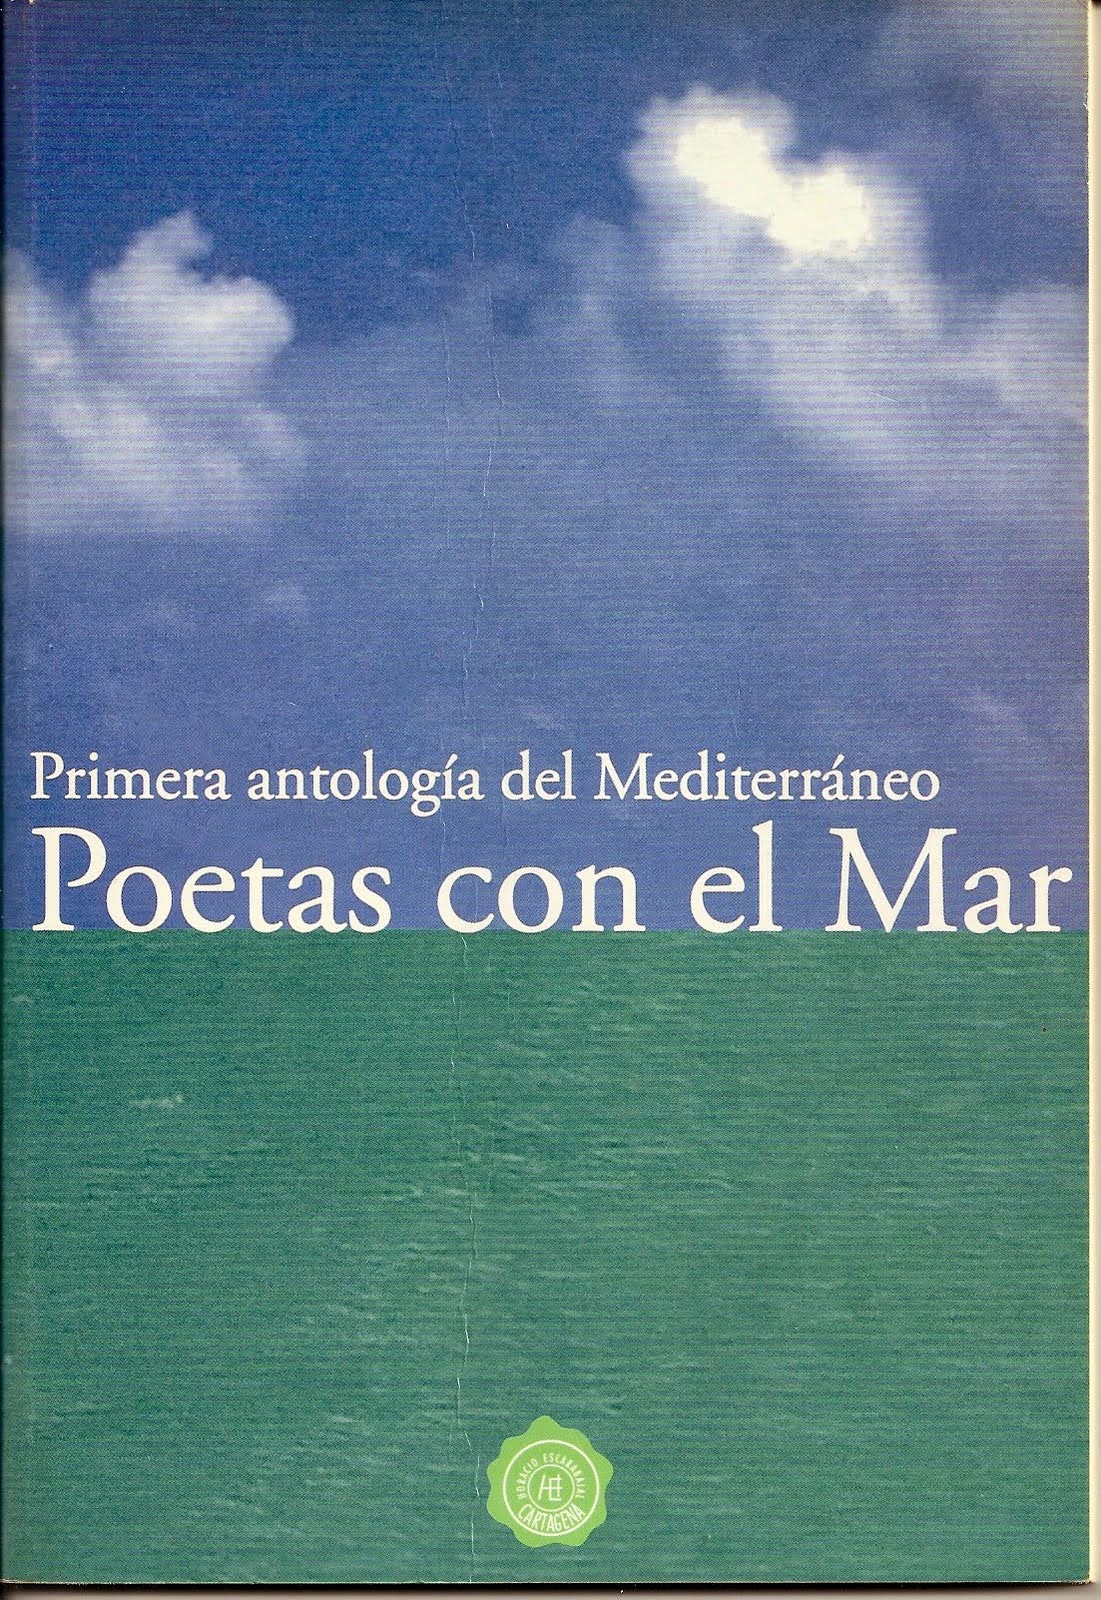 Poetas con el Mar. Primera antología del Mediterráneo